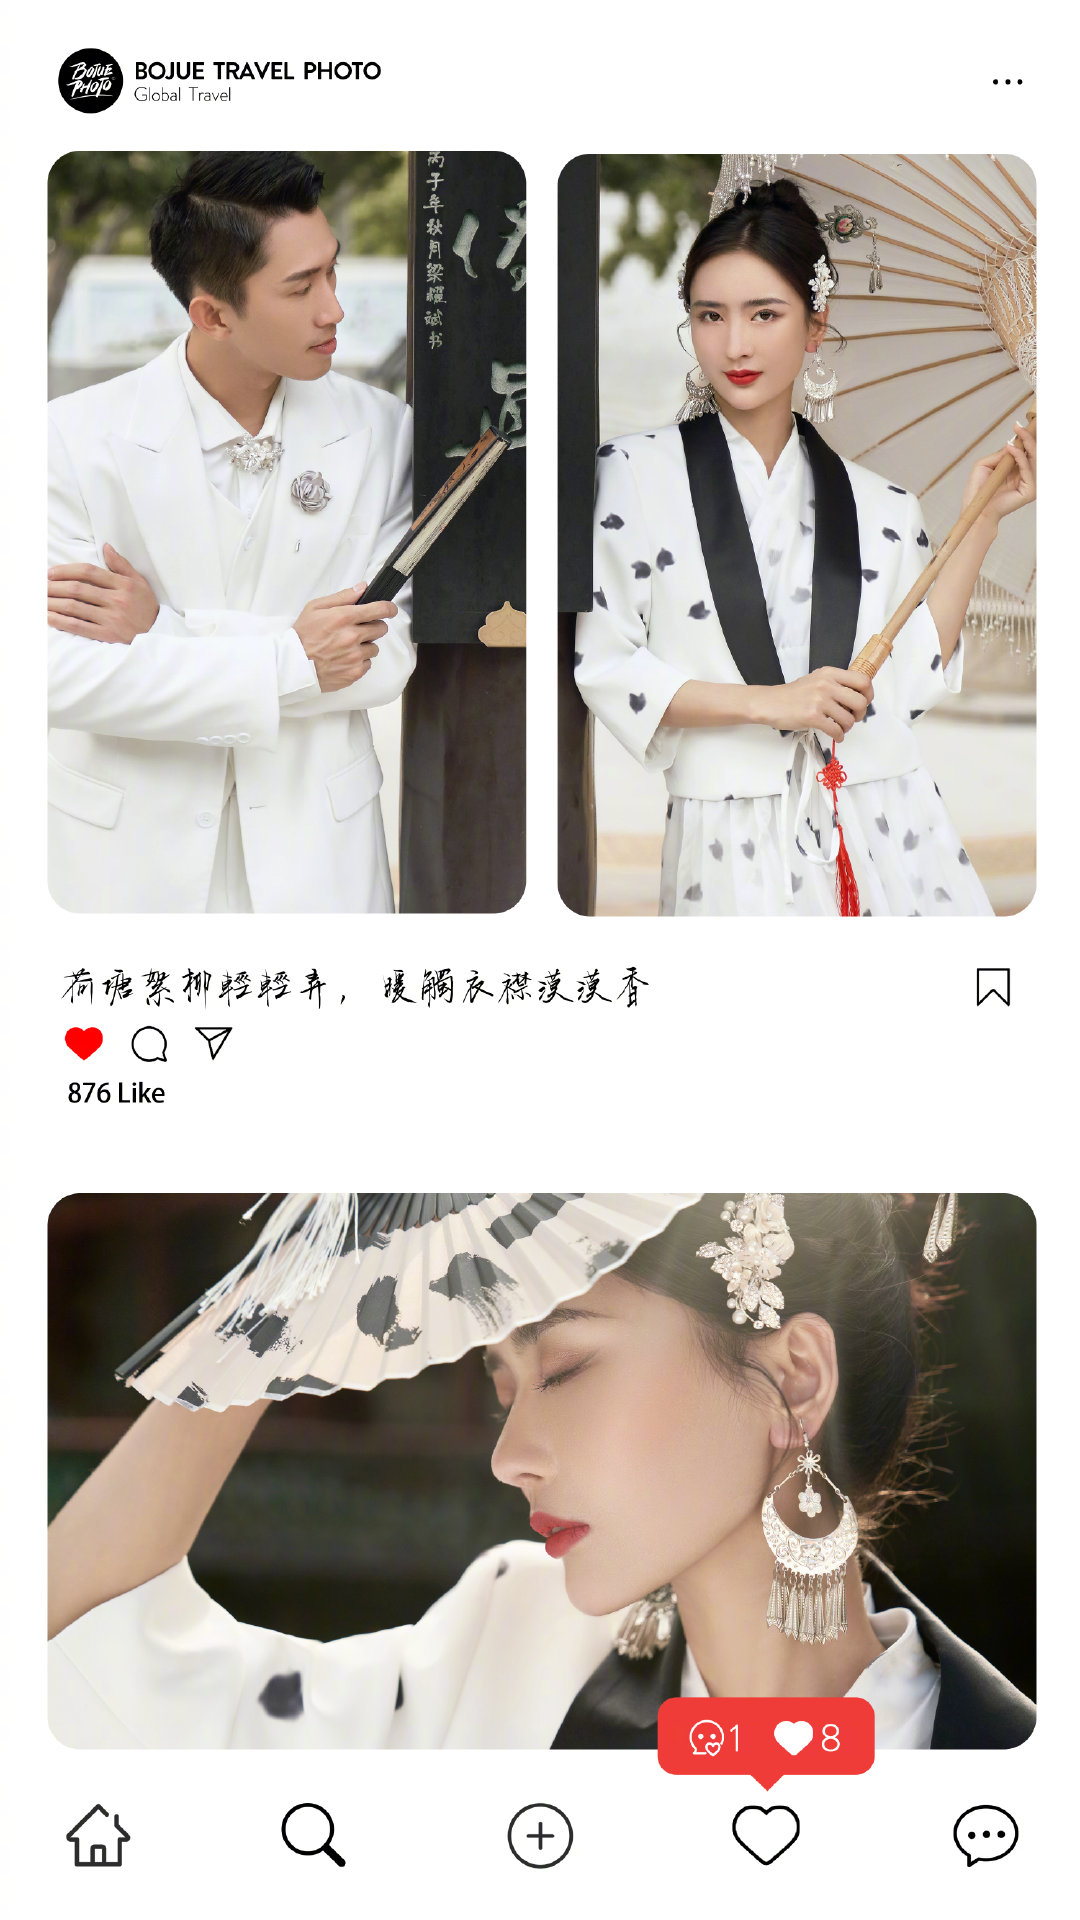 铂爵旅拍广州婚纱照 一趟意义非凡的婚纱摄影之旅